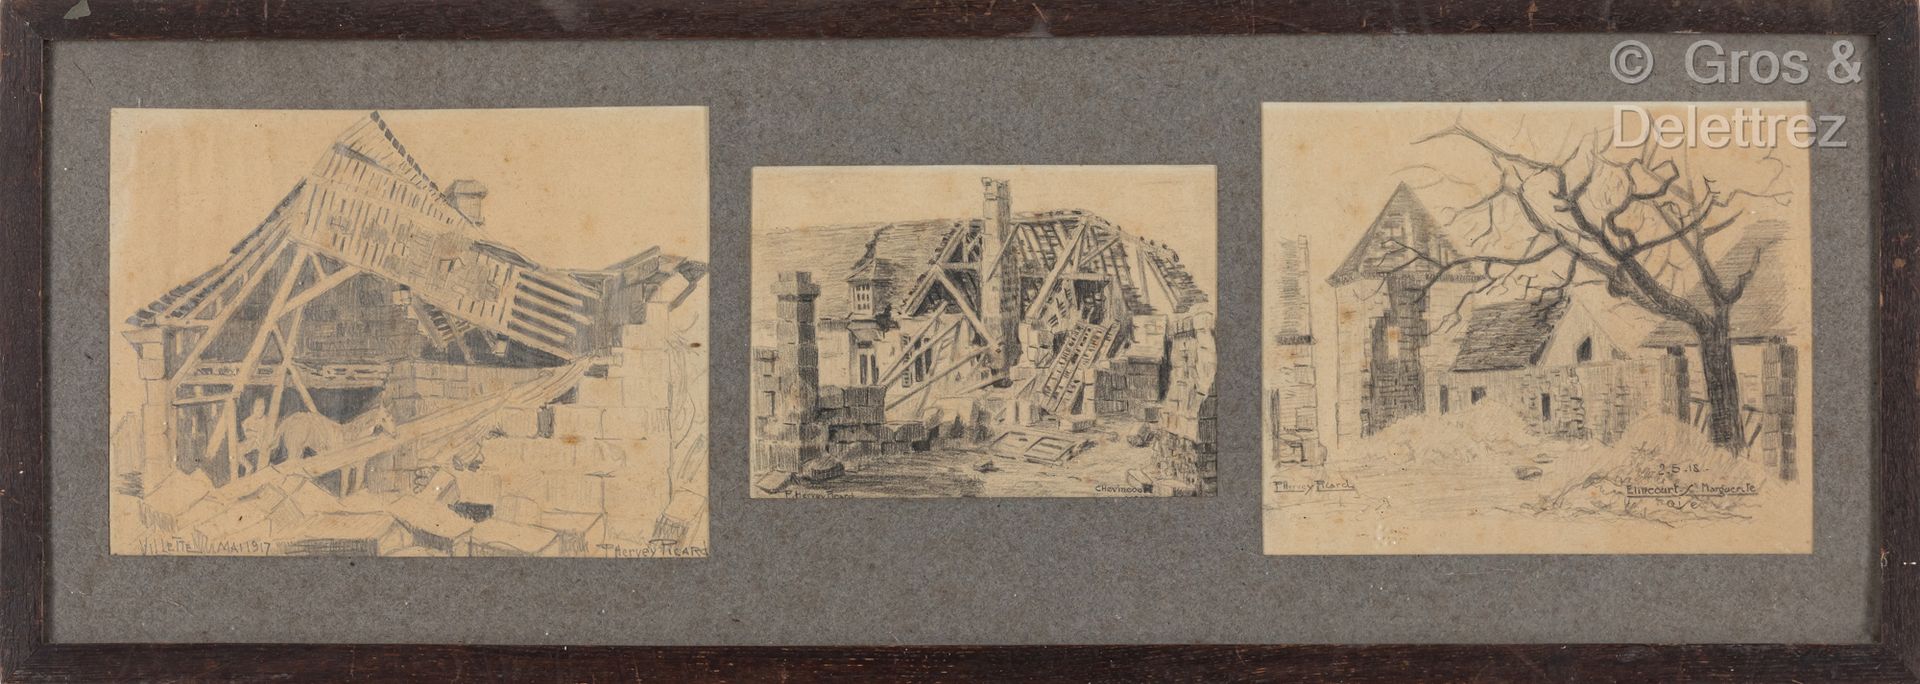 Null F.皮卡(19-20世纪)

废墟的风景 

2幅水彩画和3支铅笔

约1917-1918年